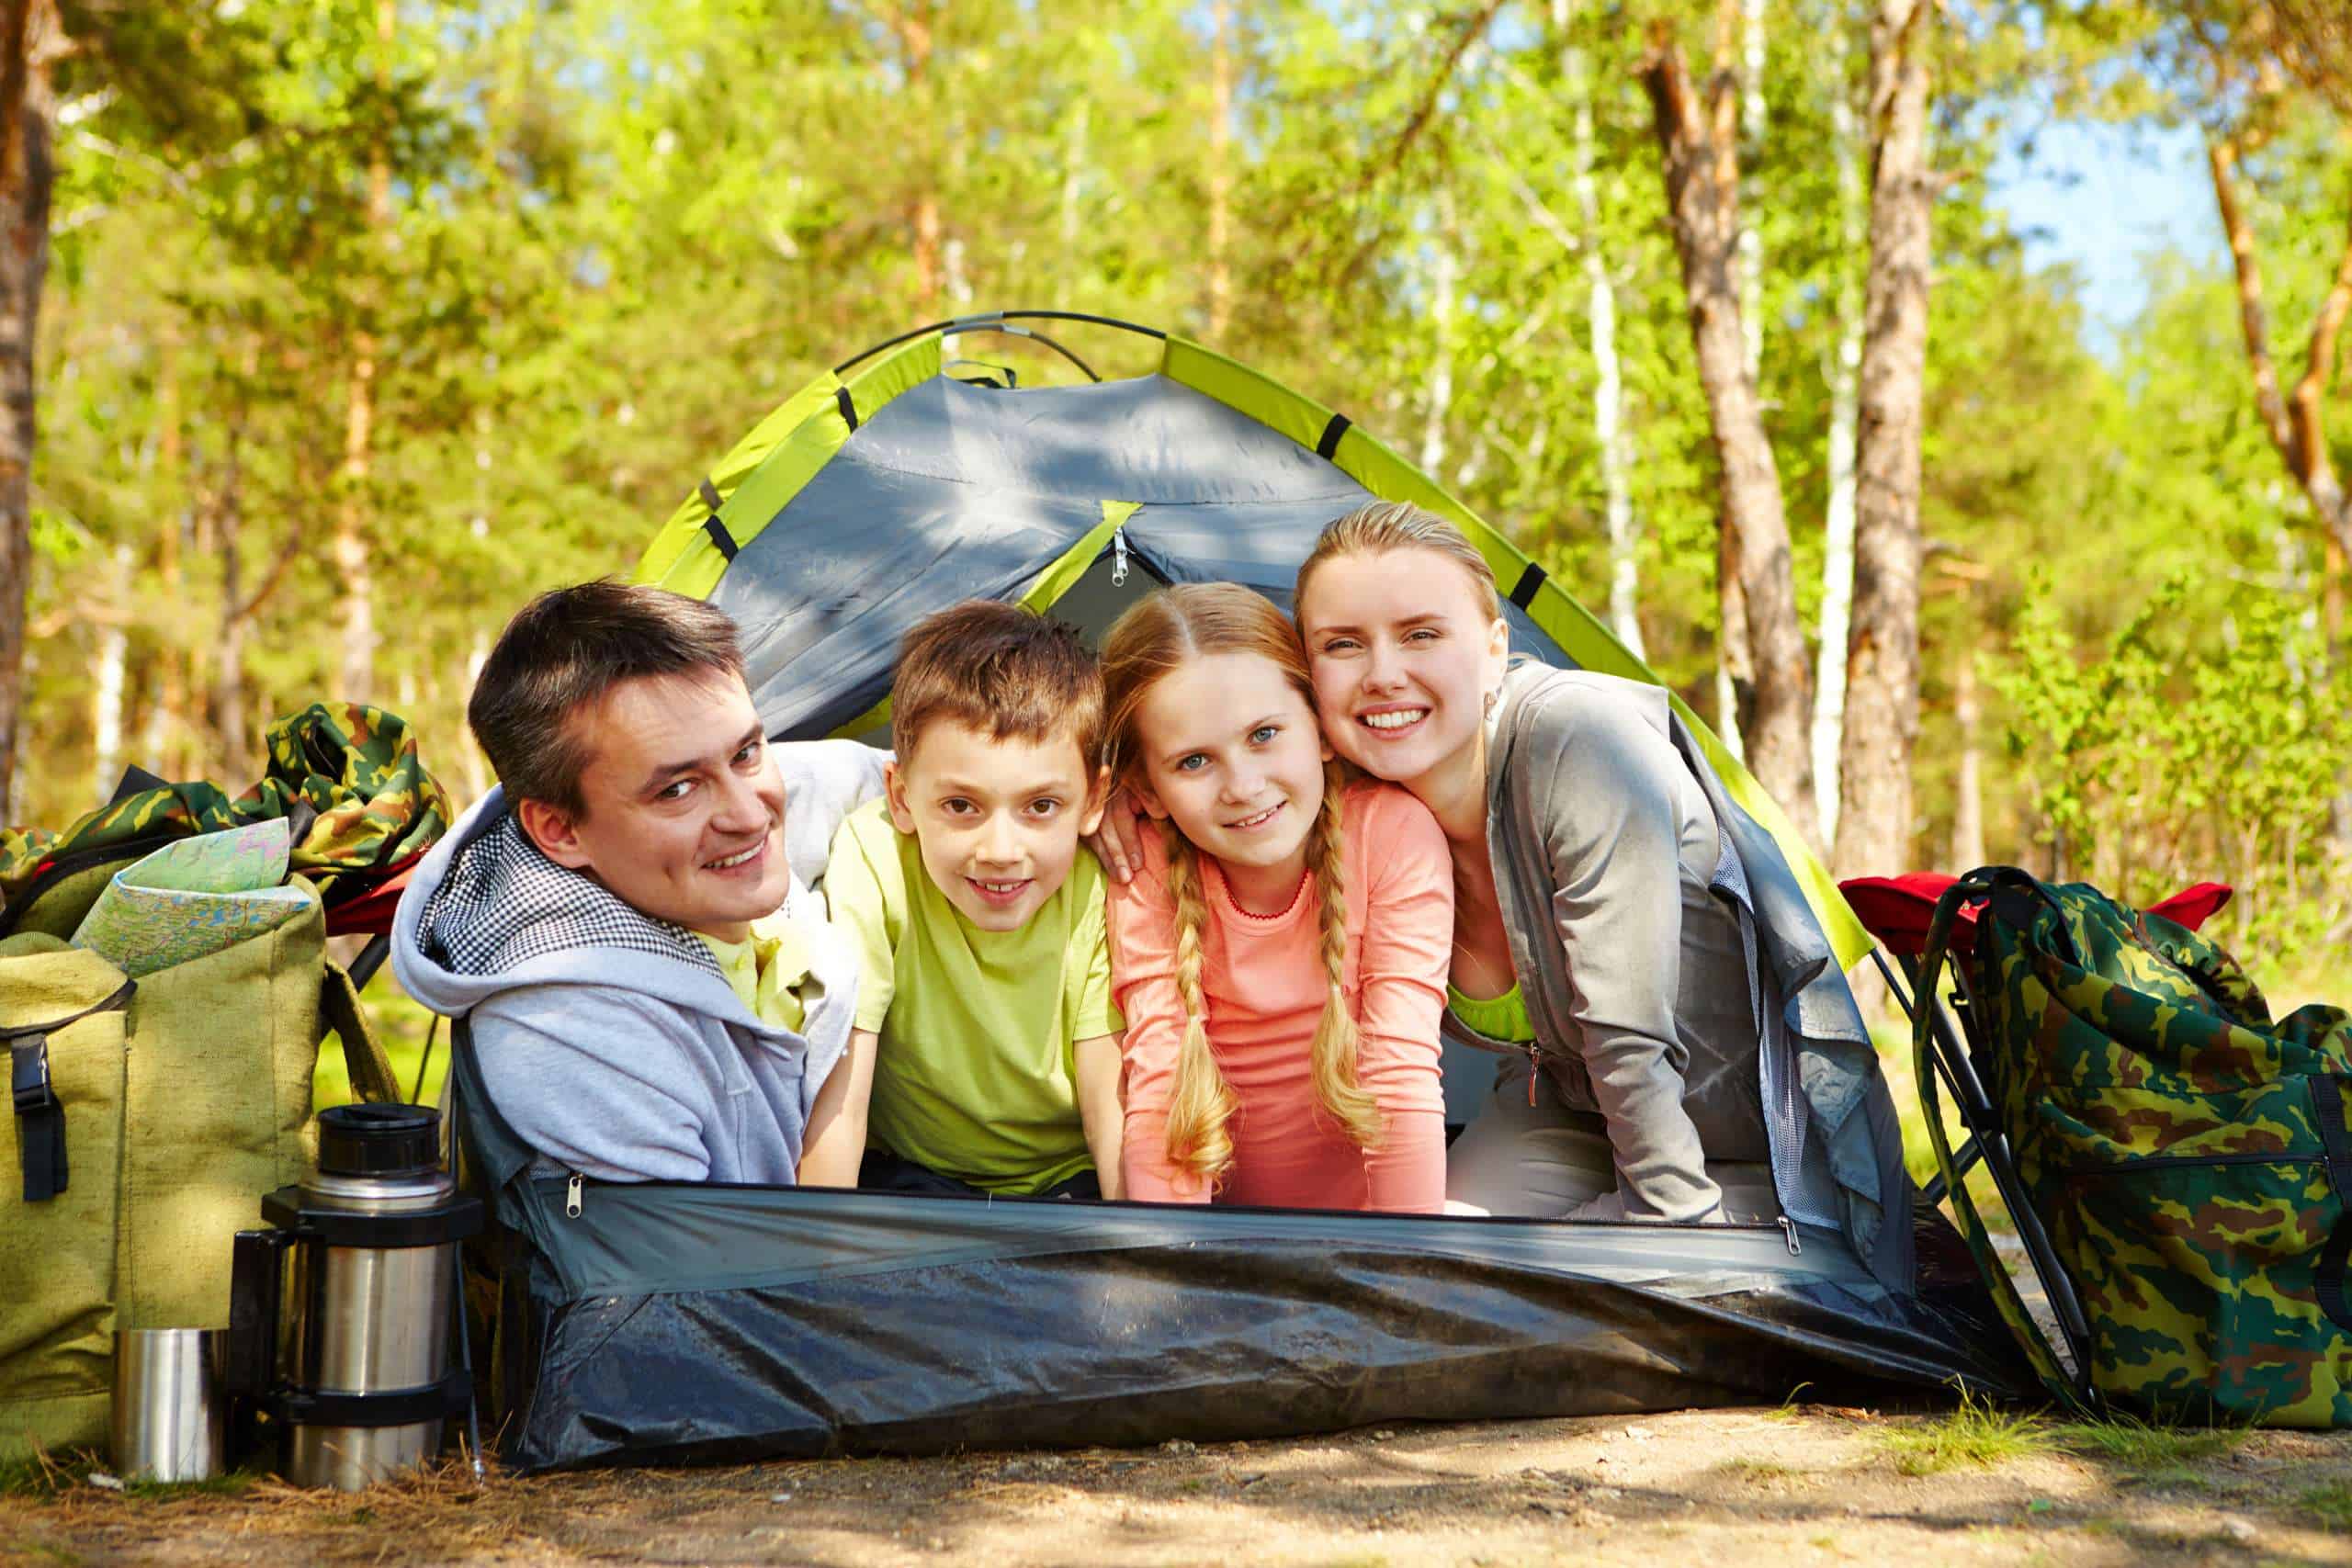 Rodzinny nocleg pod chmurką. Jaki namiot sprawdzi się najlepiej?